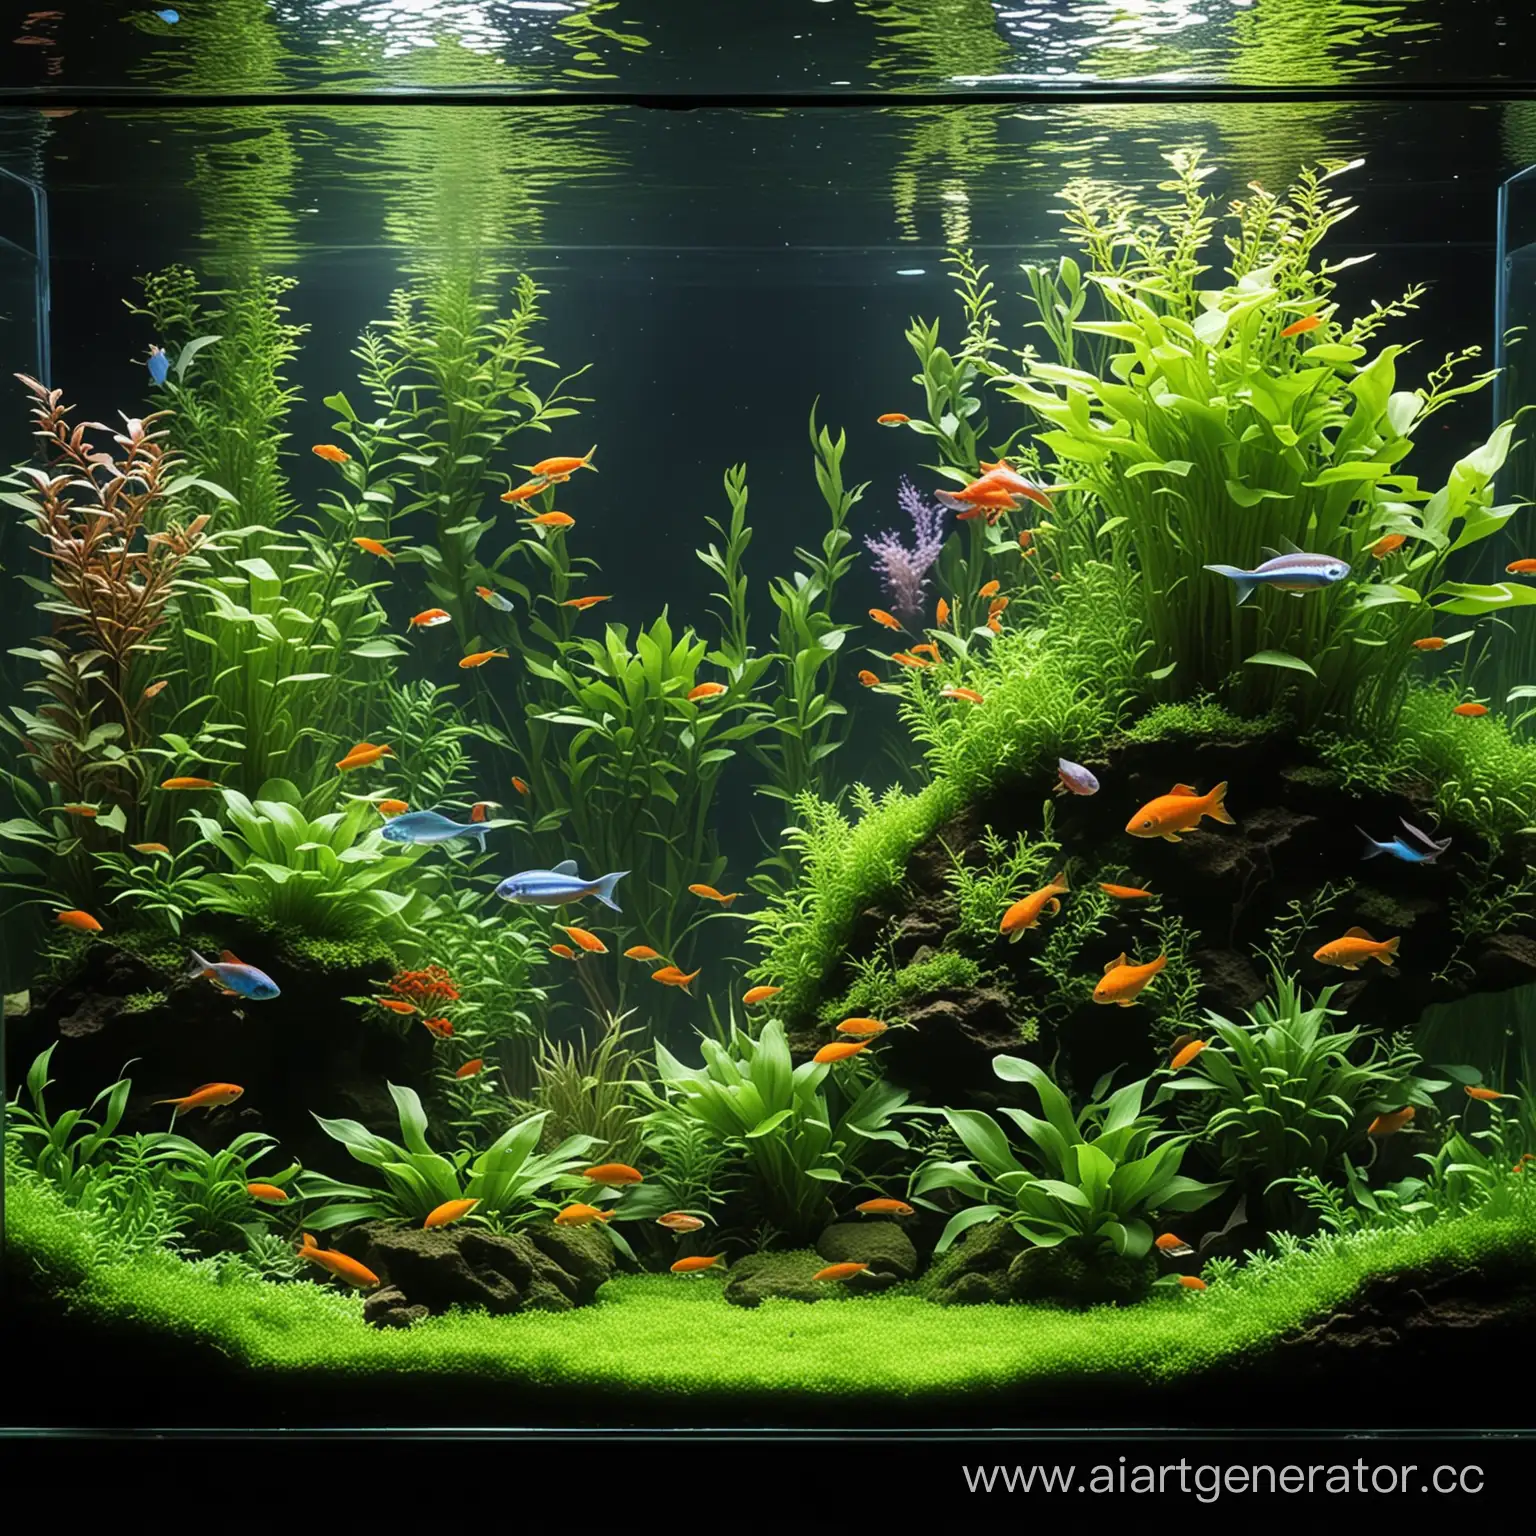 Аквариум с живыми растениями и яркими рыьками дизайн акваскейп